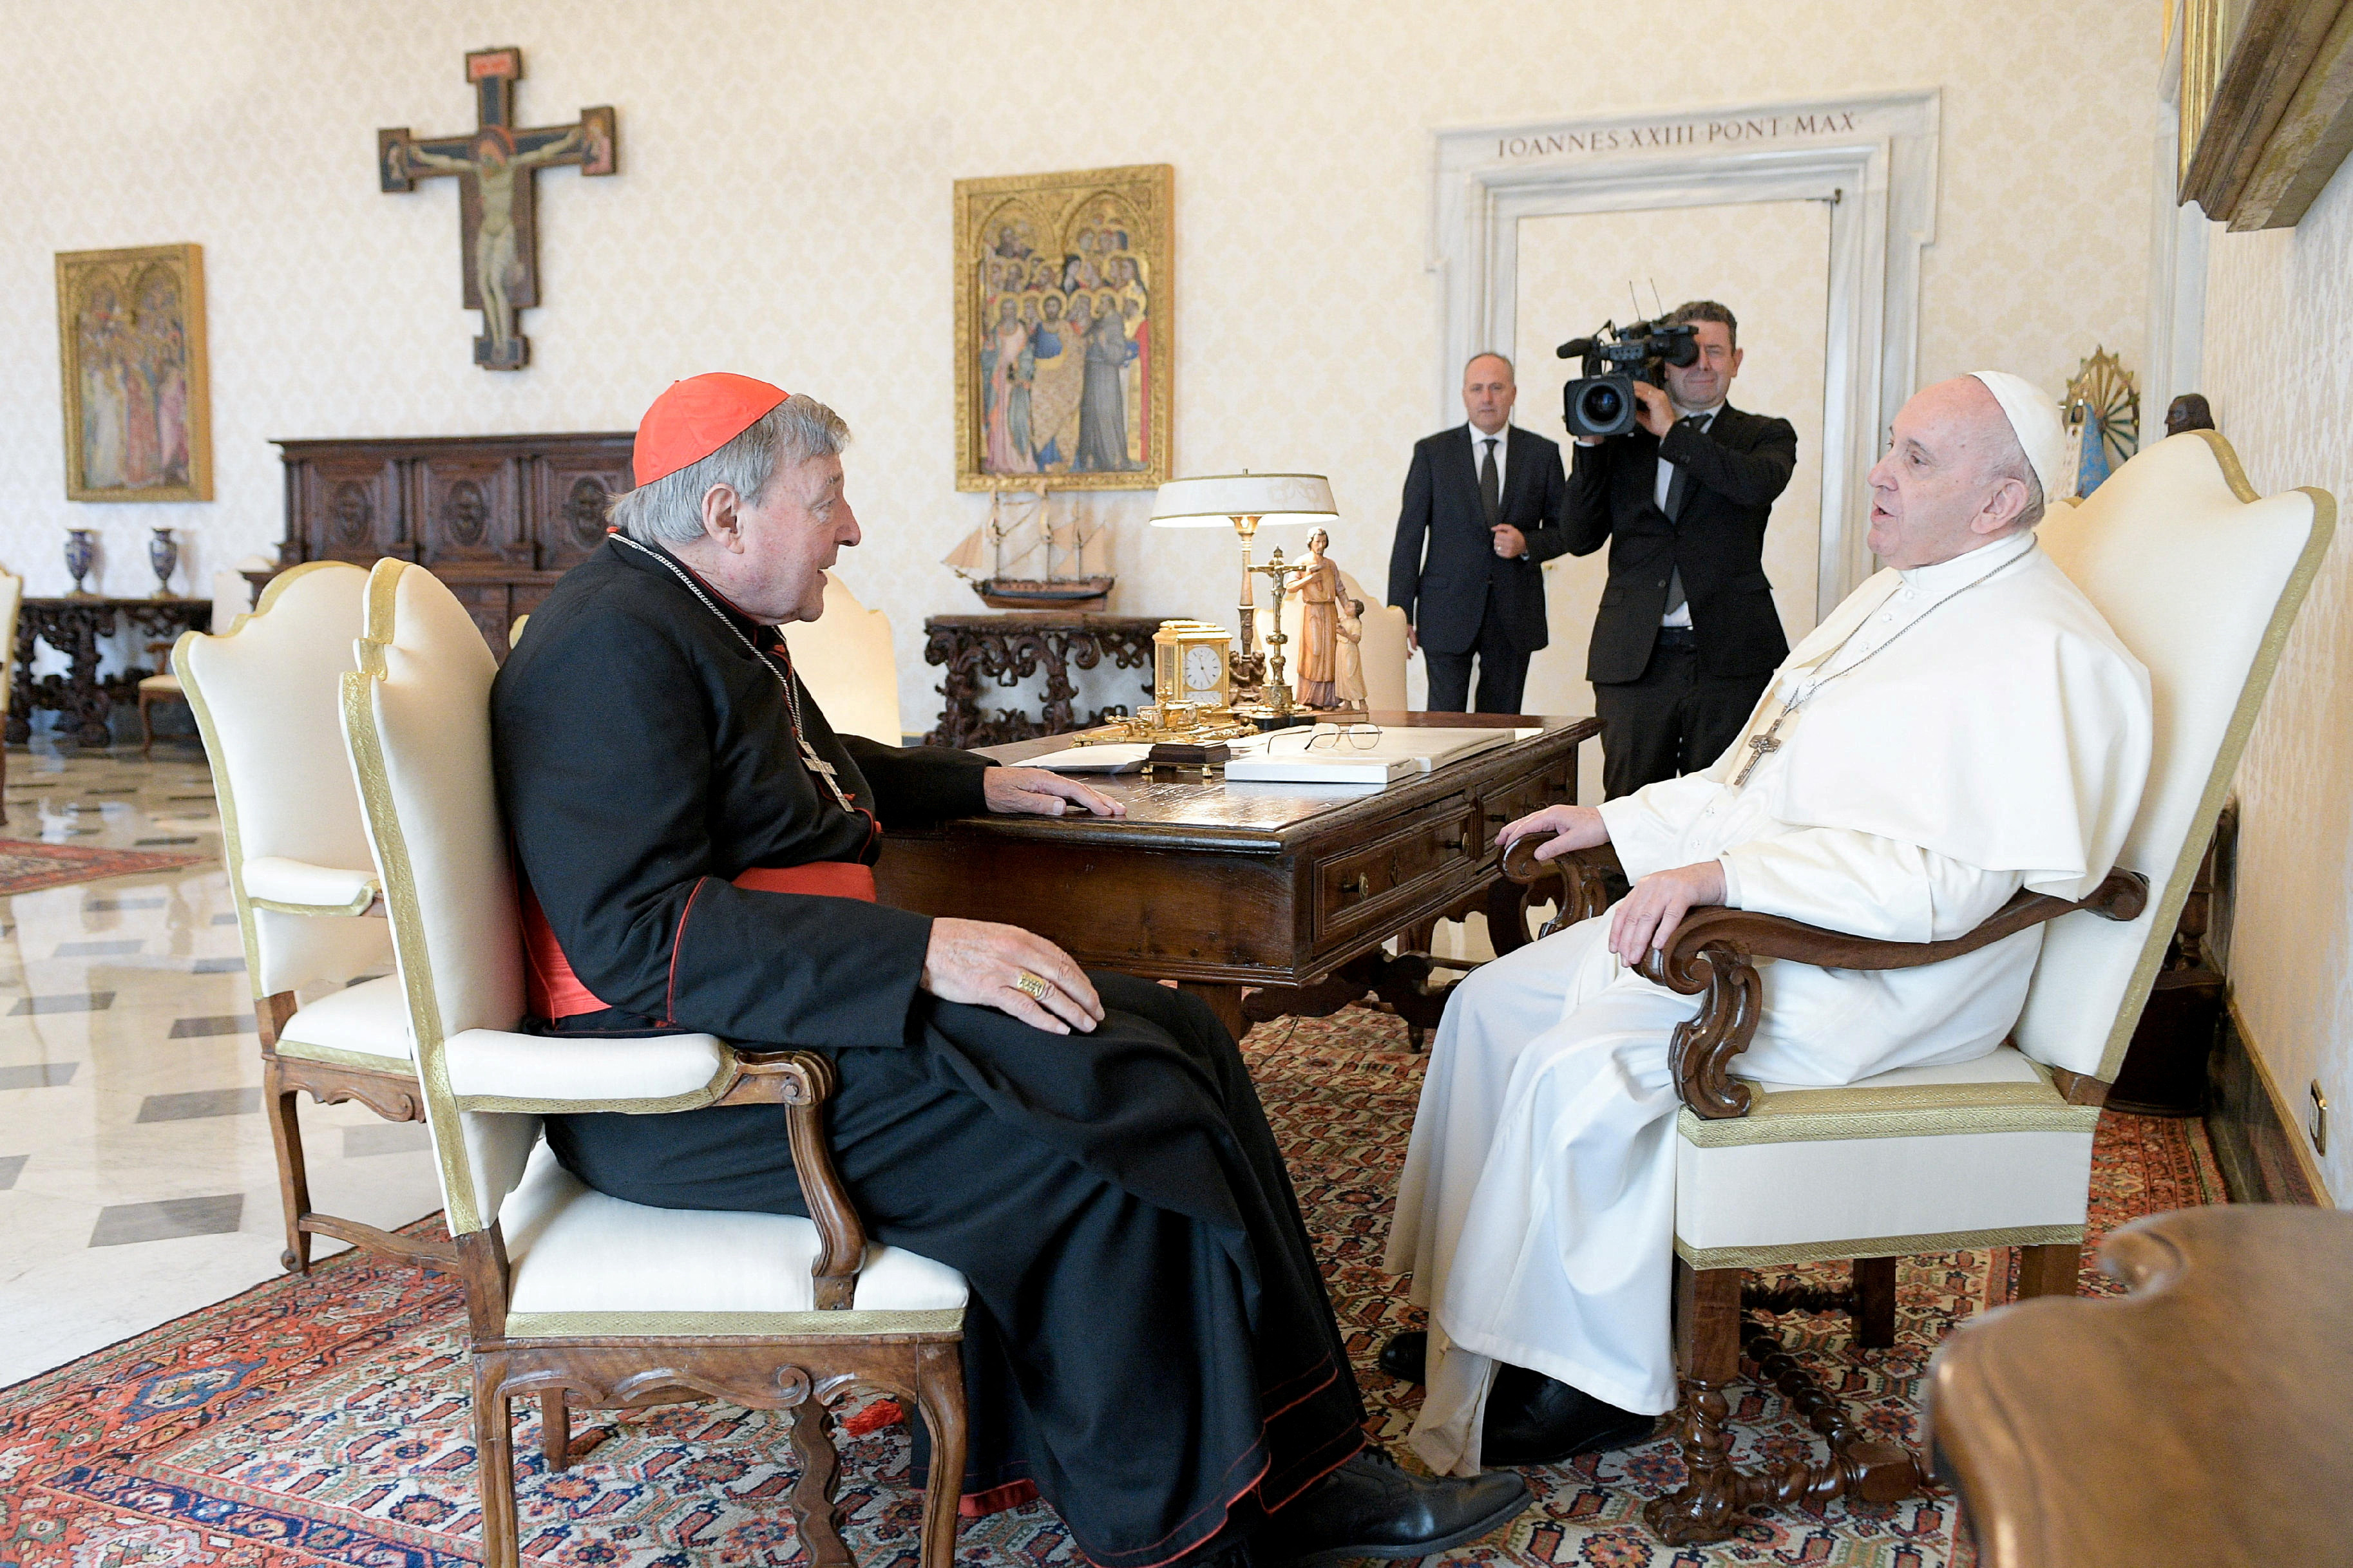 Las duras críticas póstumas al papa Francisco del cardenal Pell: “Este pontificado es un desastre en muchos aspectos”